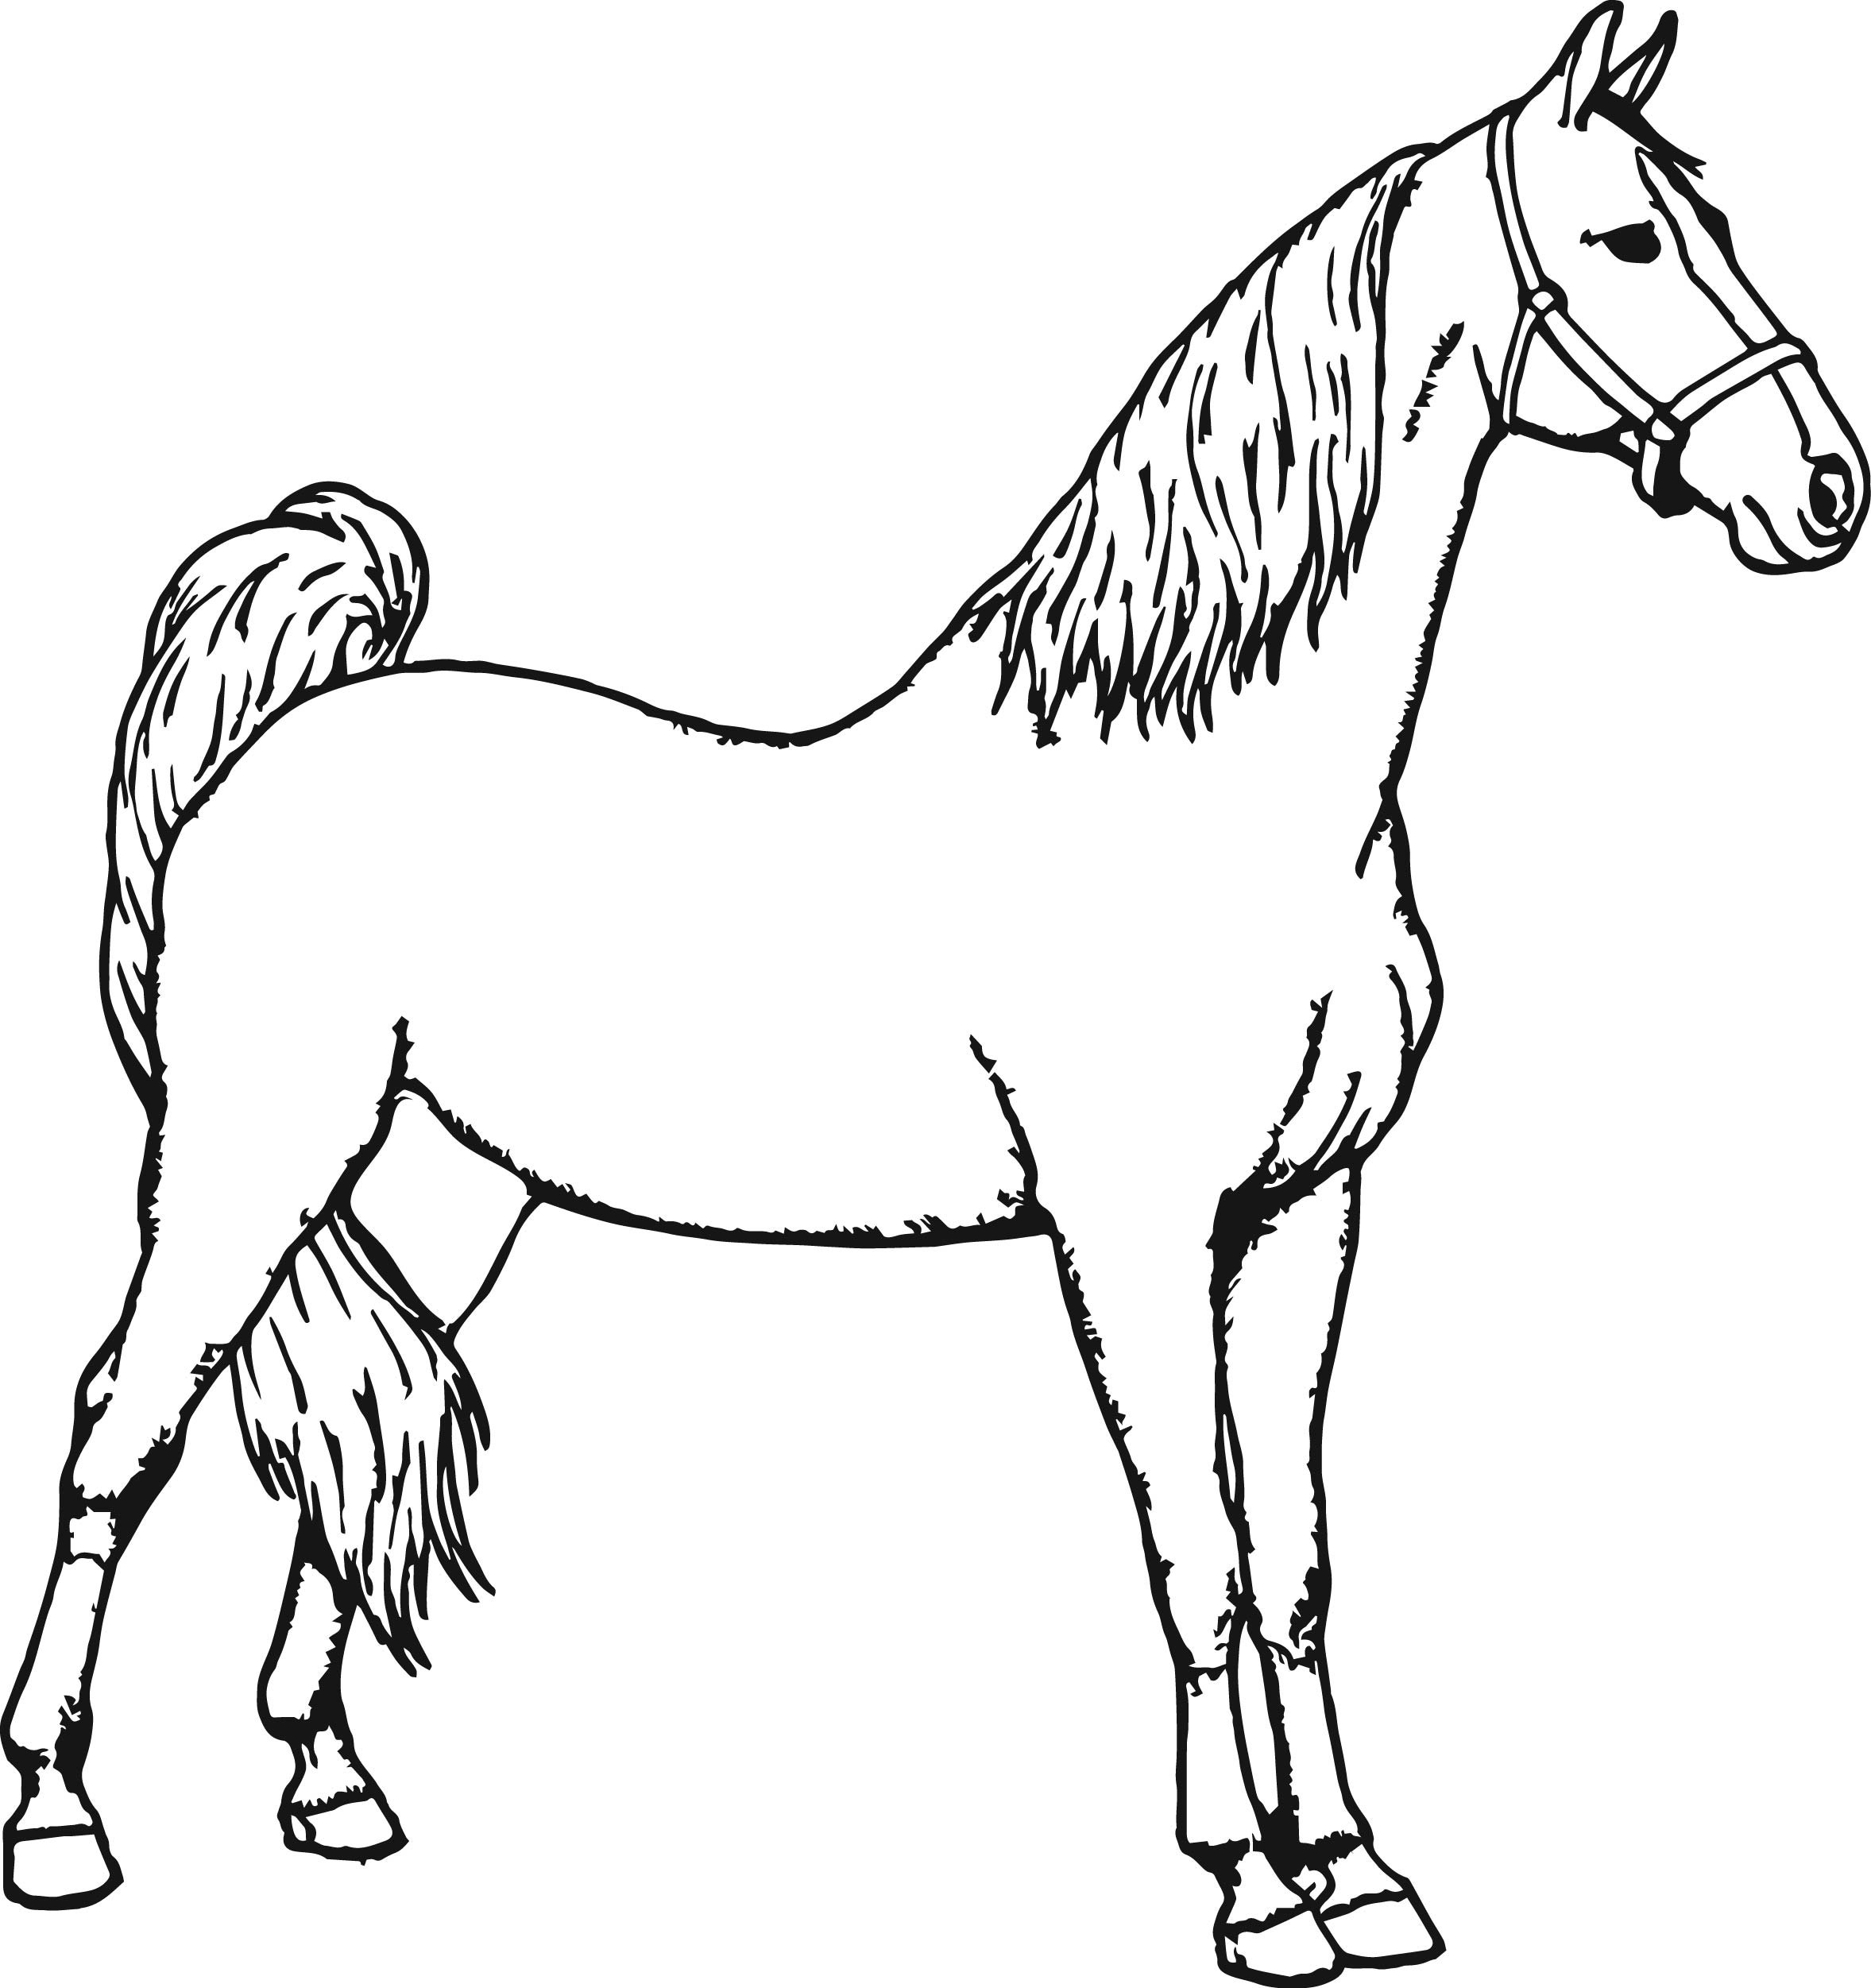 Раскрасить лошадку. Раскраска. Лошади. Лошадка раскраска для детей. Лошадь рисунок раскраска. Конь раскраска для детей.